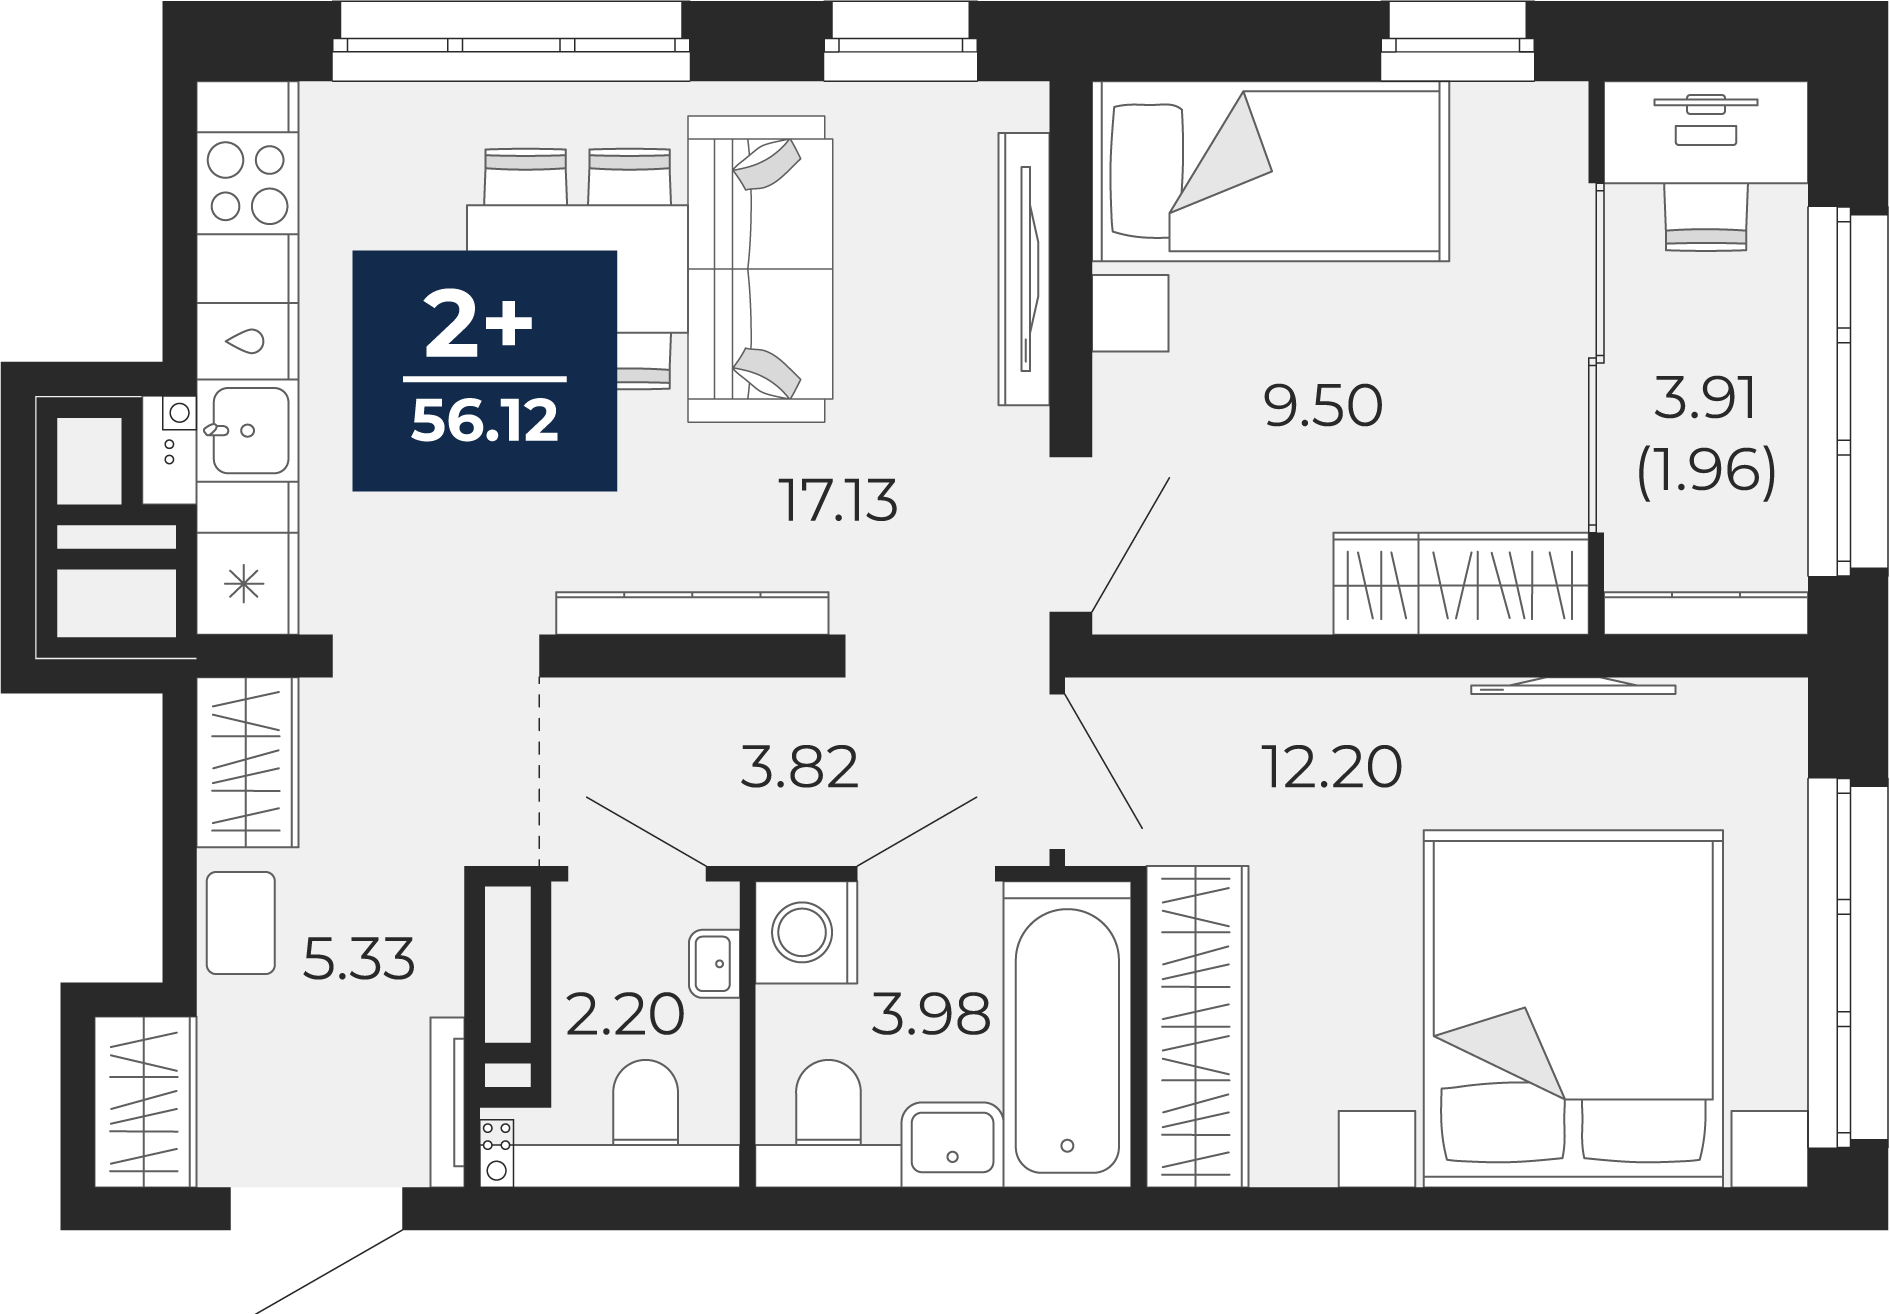 Квартира № 119, 2-комнатная, 56.12 кв. м, 9 этаж